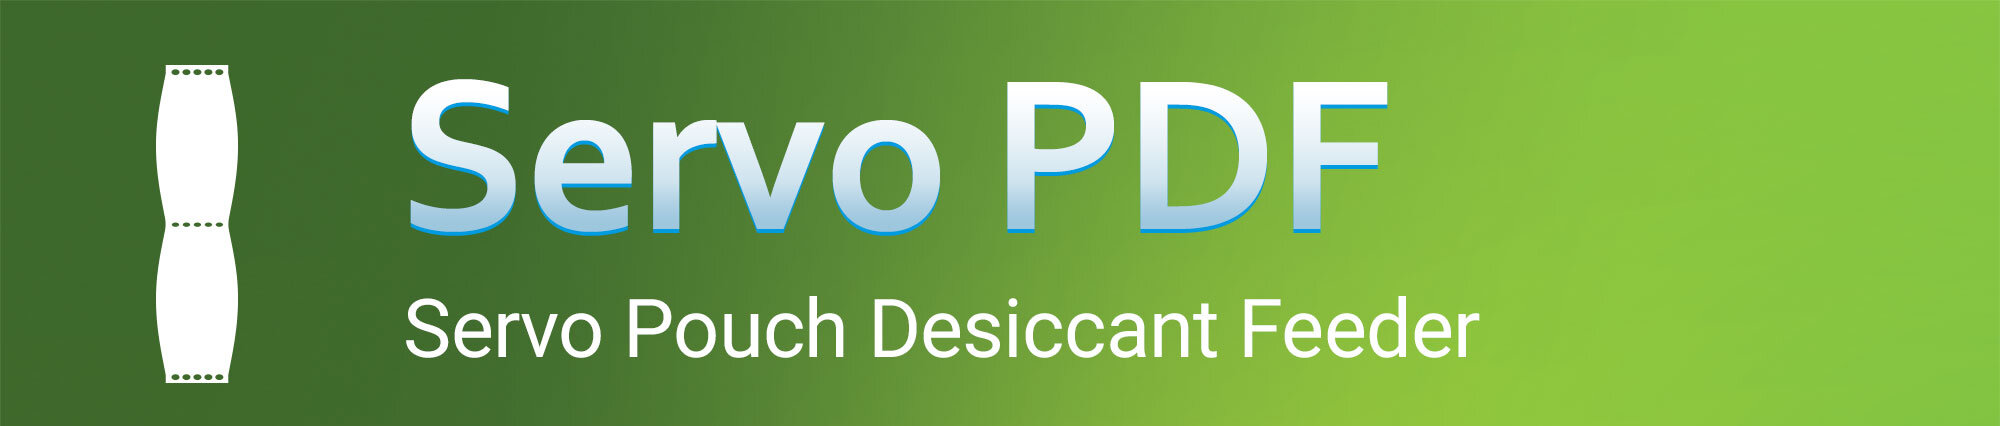 伺服PDF -干燥剂-横幅